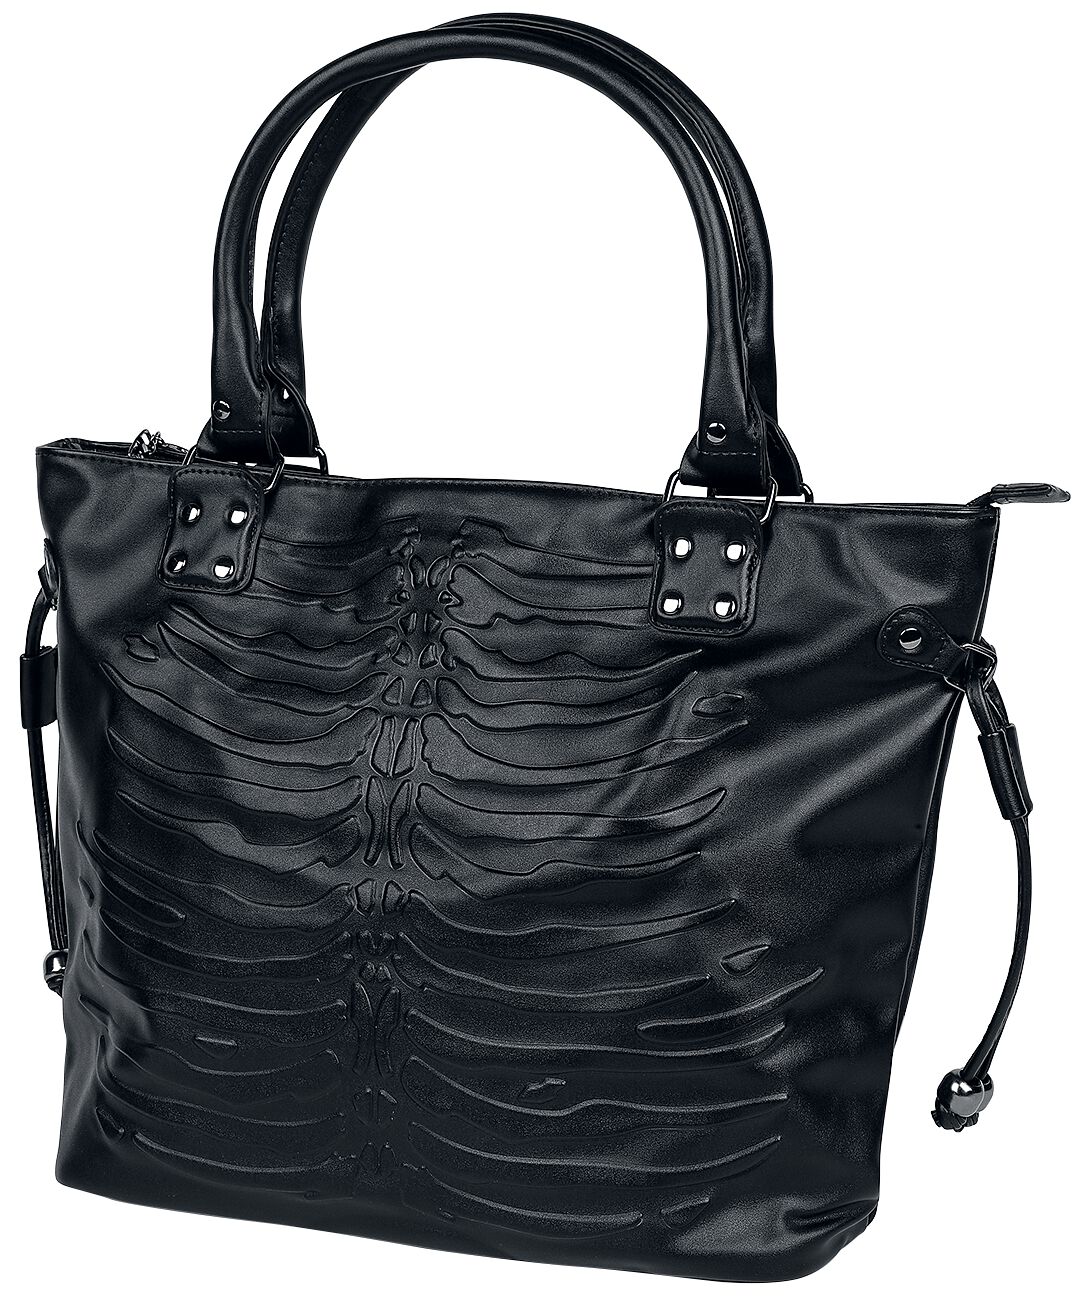 Banned Alternative Handtasche - Skeleton Bag - für Damen - schwarz